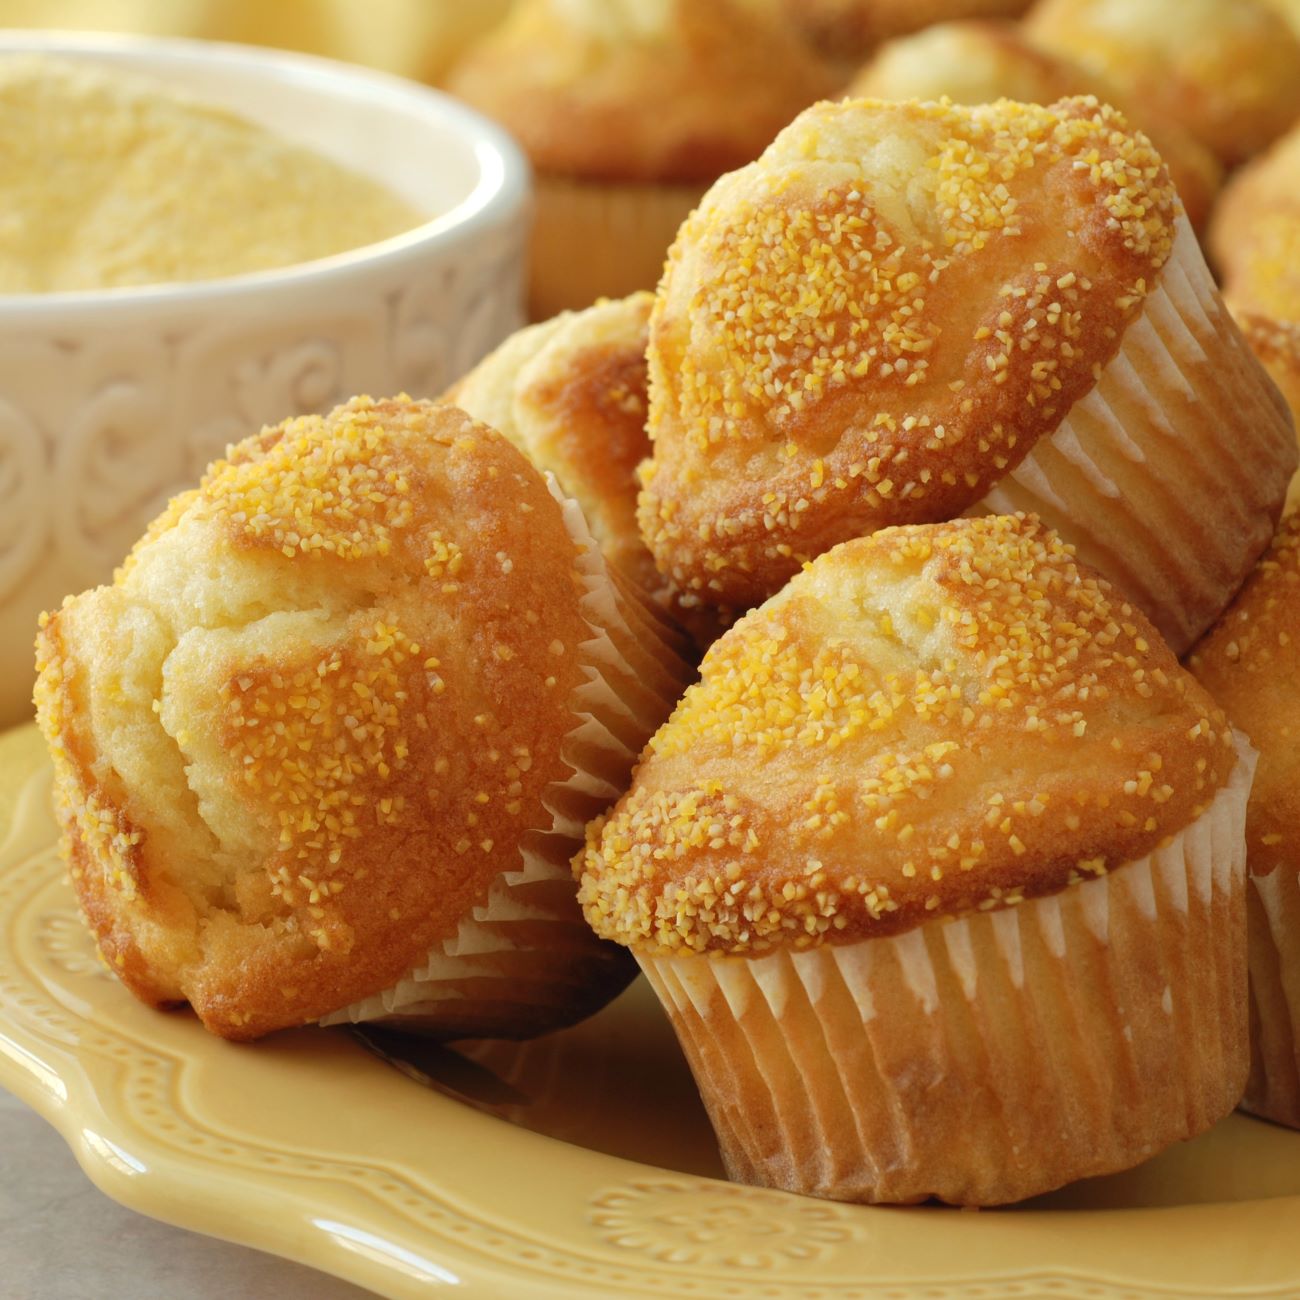 Babeczki z chleba kukurydzianego pokazane są ułożone w stos na żółtym talerzu.